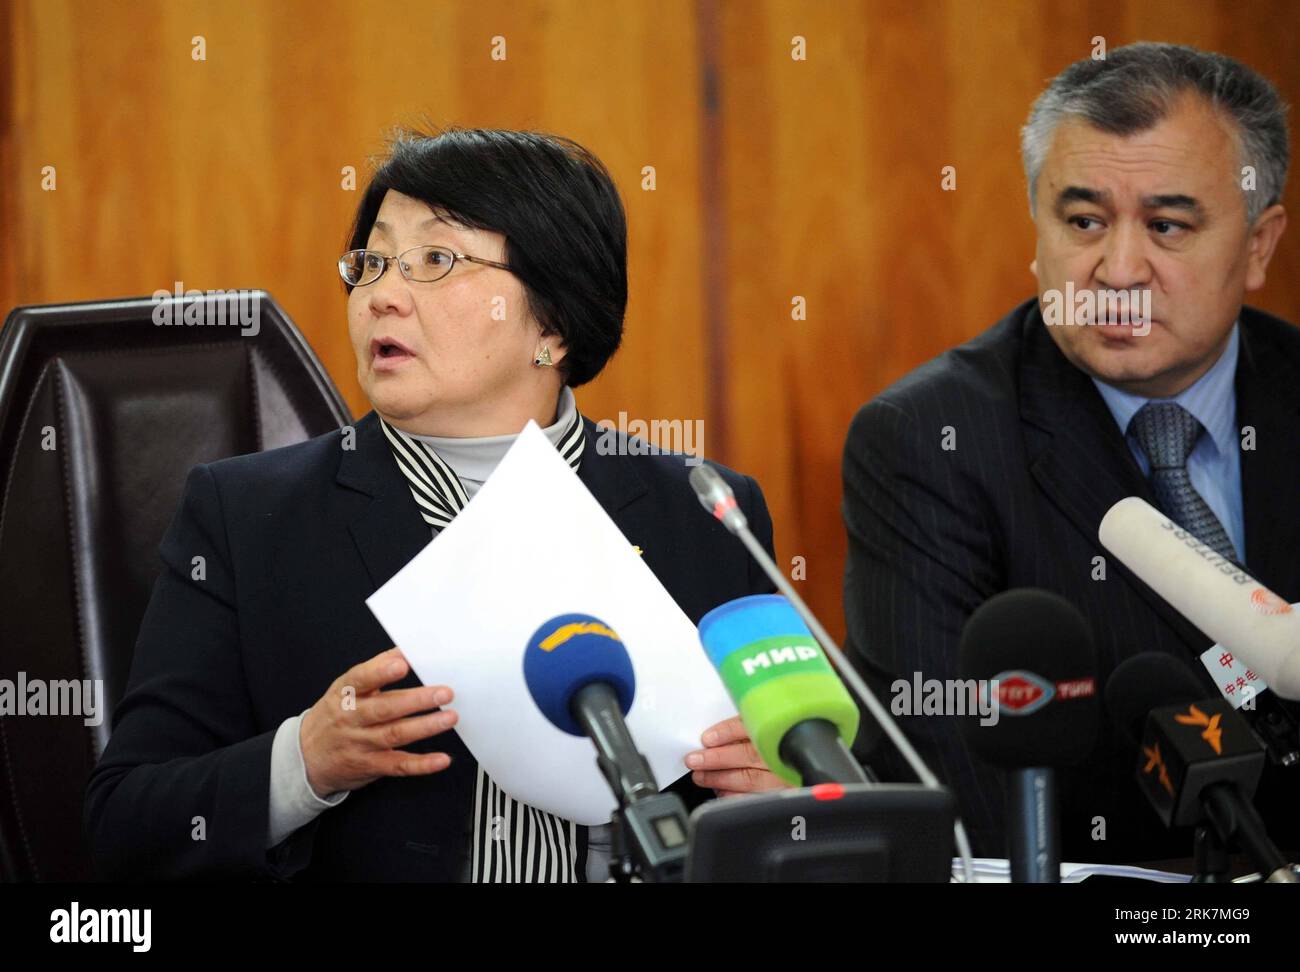 Bildnummer: 53928009 Datum: 08.04.2010 Copyright: imago/Xinhua leader provvisorio del governo Roza Otunbayeva (L) e Omurbek Tekebayev, presidente del movimento di opposizione Ata-jurt (patria), partecipano a una conferenza stampa a Bishkek, capitale del Kirghizistan, 8 aprile 2010. Giovedì i partiti di opposizione kirghisi hanno formato un governo di coalizione ad interim, mentre il Presidente si è rifiutato di dimettersi dopo scontri che hanno lasciato almeno 75 morti e altri 1.000 feriti. (Xinhua/Sadat) (lmz) (19)KIRGHIZISTAN-BISHKEK-UNREST-PRESS CONFERENCE PUBLICATIONxNOTxINxCHN Politik Putsch Kirgistan people Übergangsregierung kbdi Foto Stock